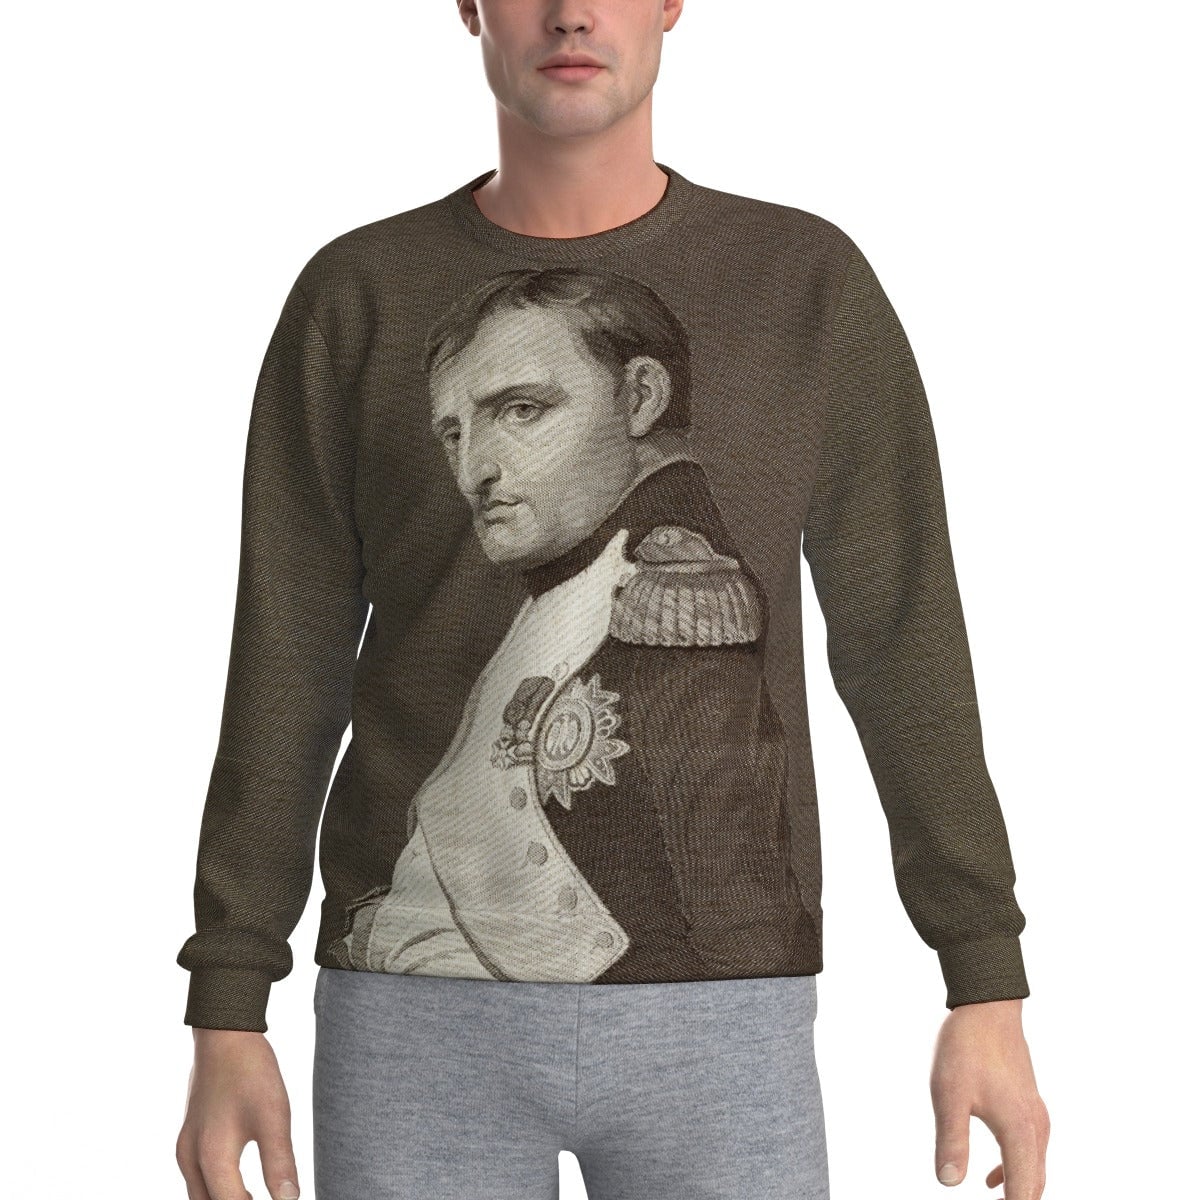 Emperor Napoleon Bonaparte Historical Portrait Sweatshirt